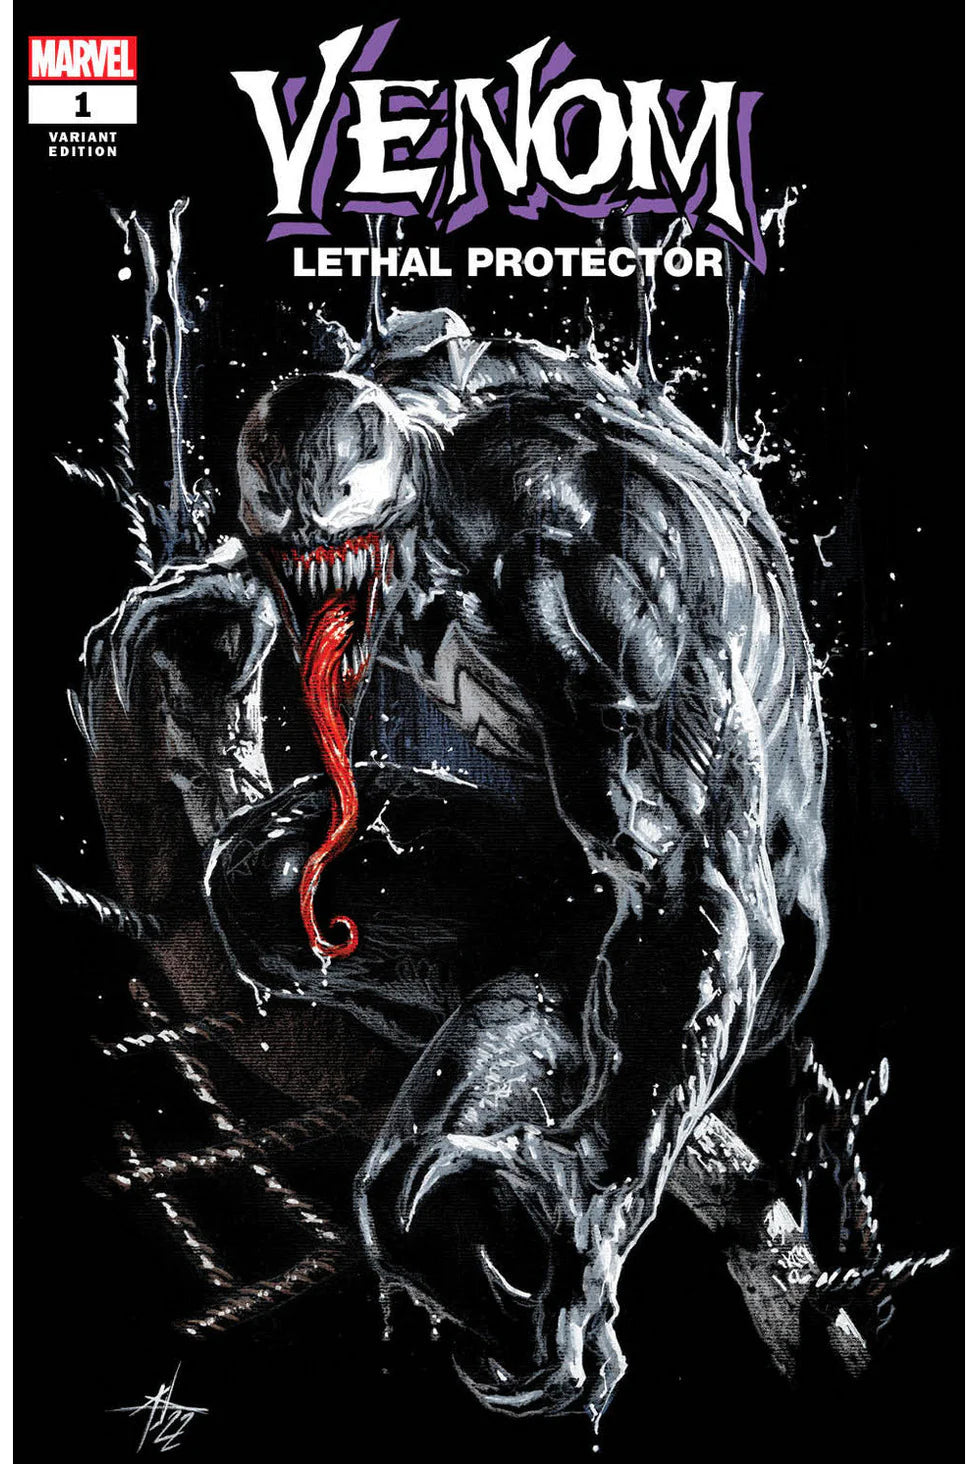 VENOM Lethal Protector Vol 2 #1 Dell 'Otto Exclusive!